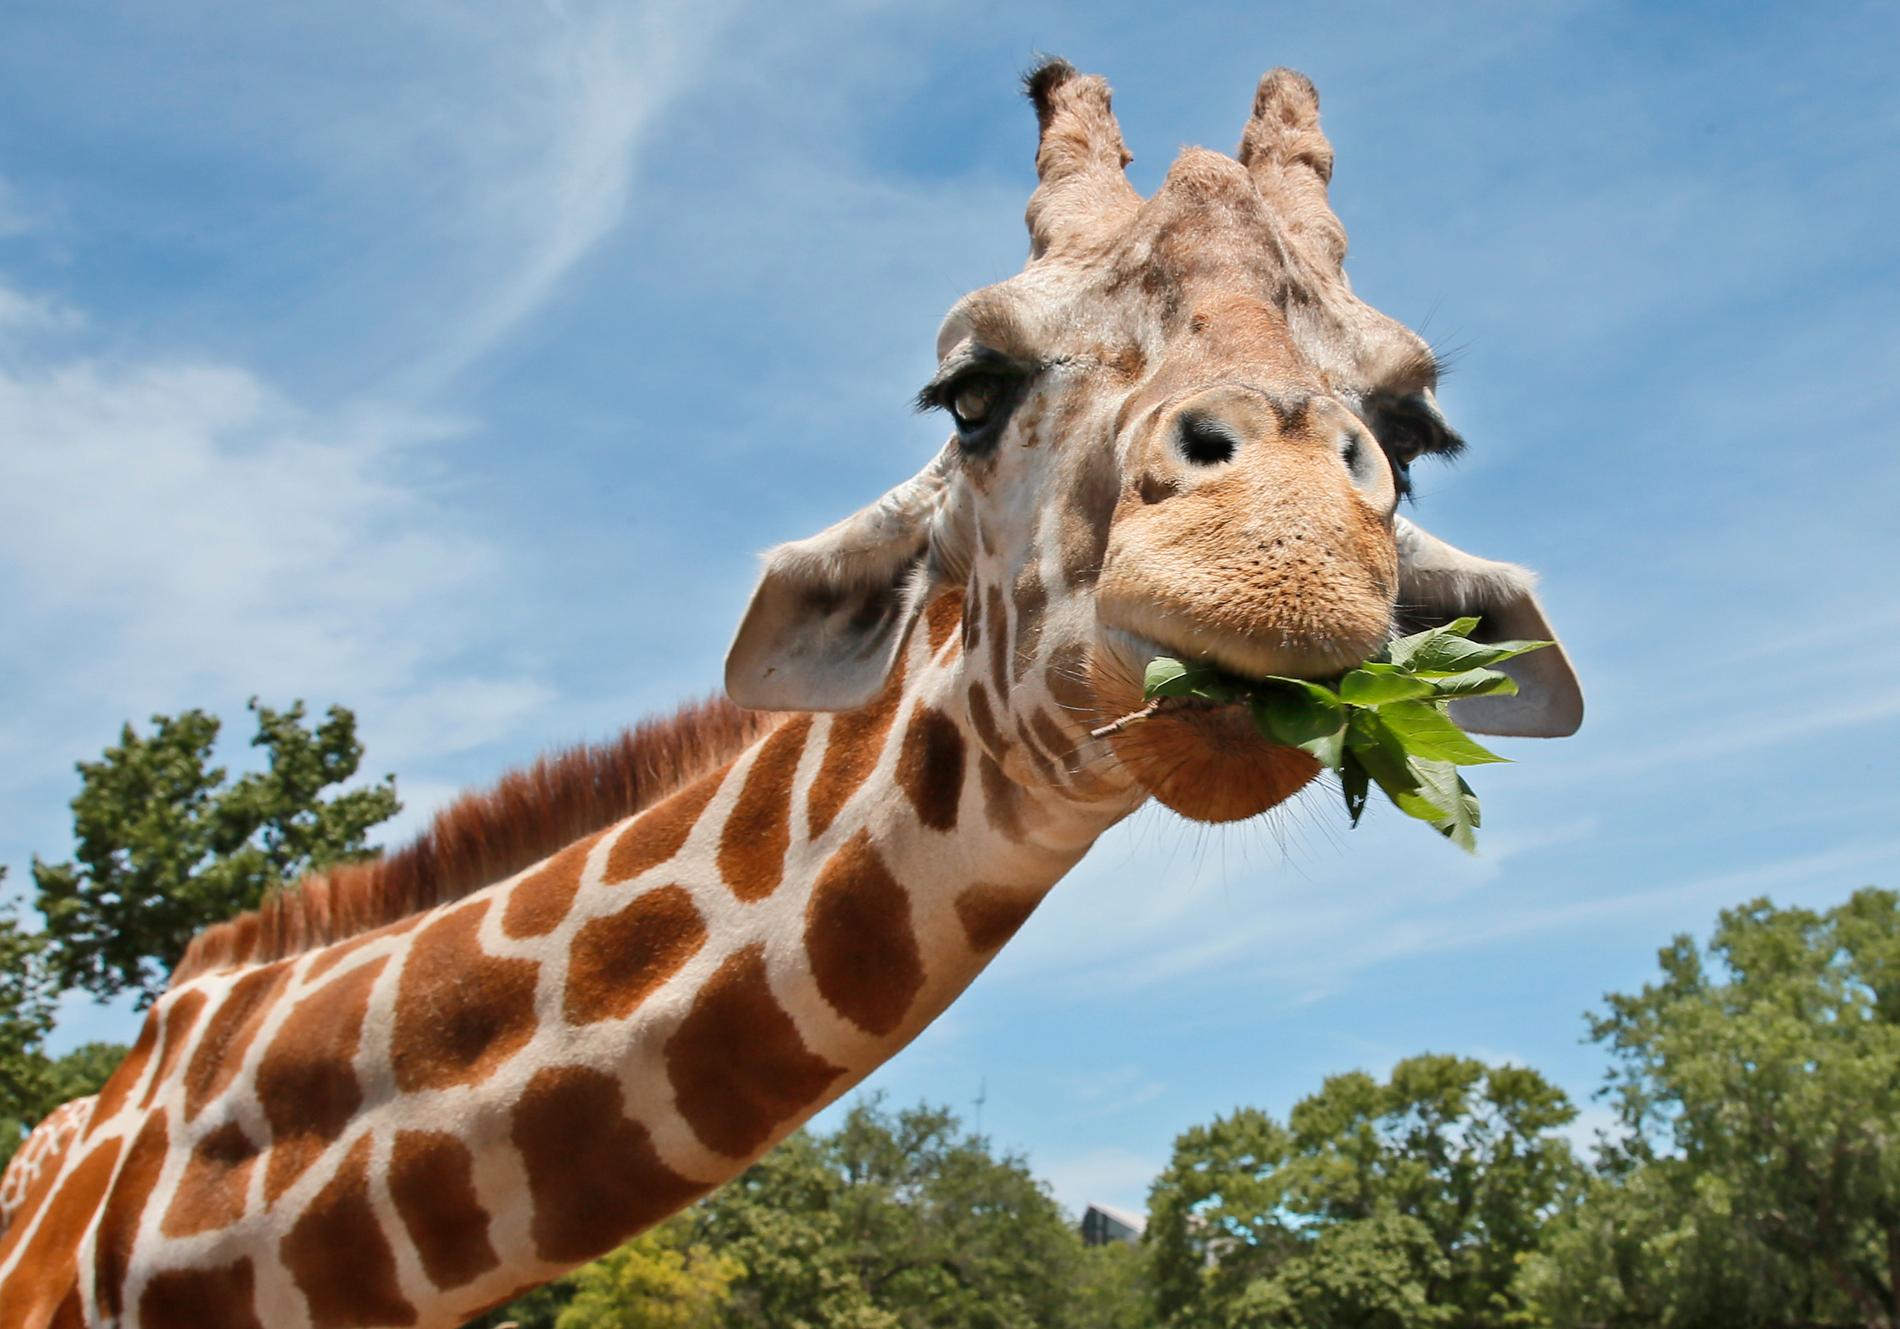 Giraffens långa hals kan ha utvecklats på grund av sexuellt urval snarare än att den behövde hitta högt belägen mat, enligt ny forskning. Arkivbild.